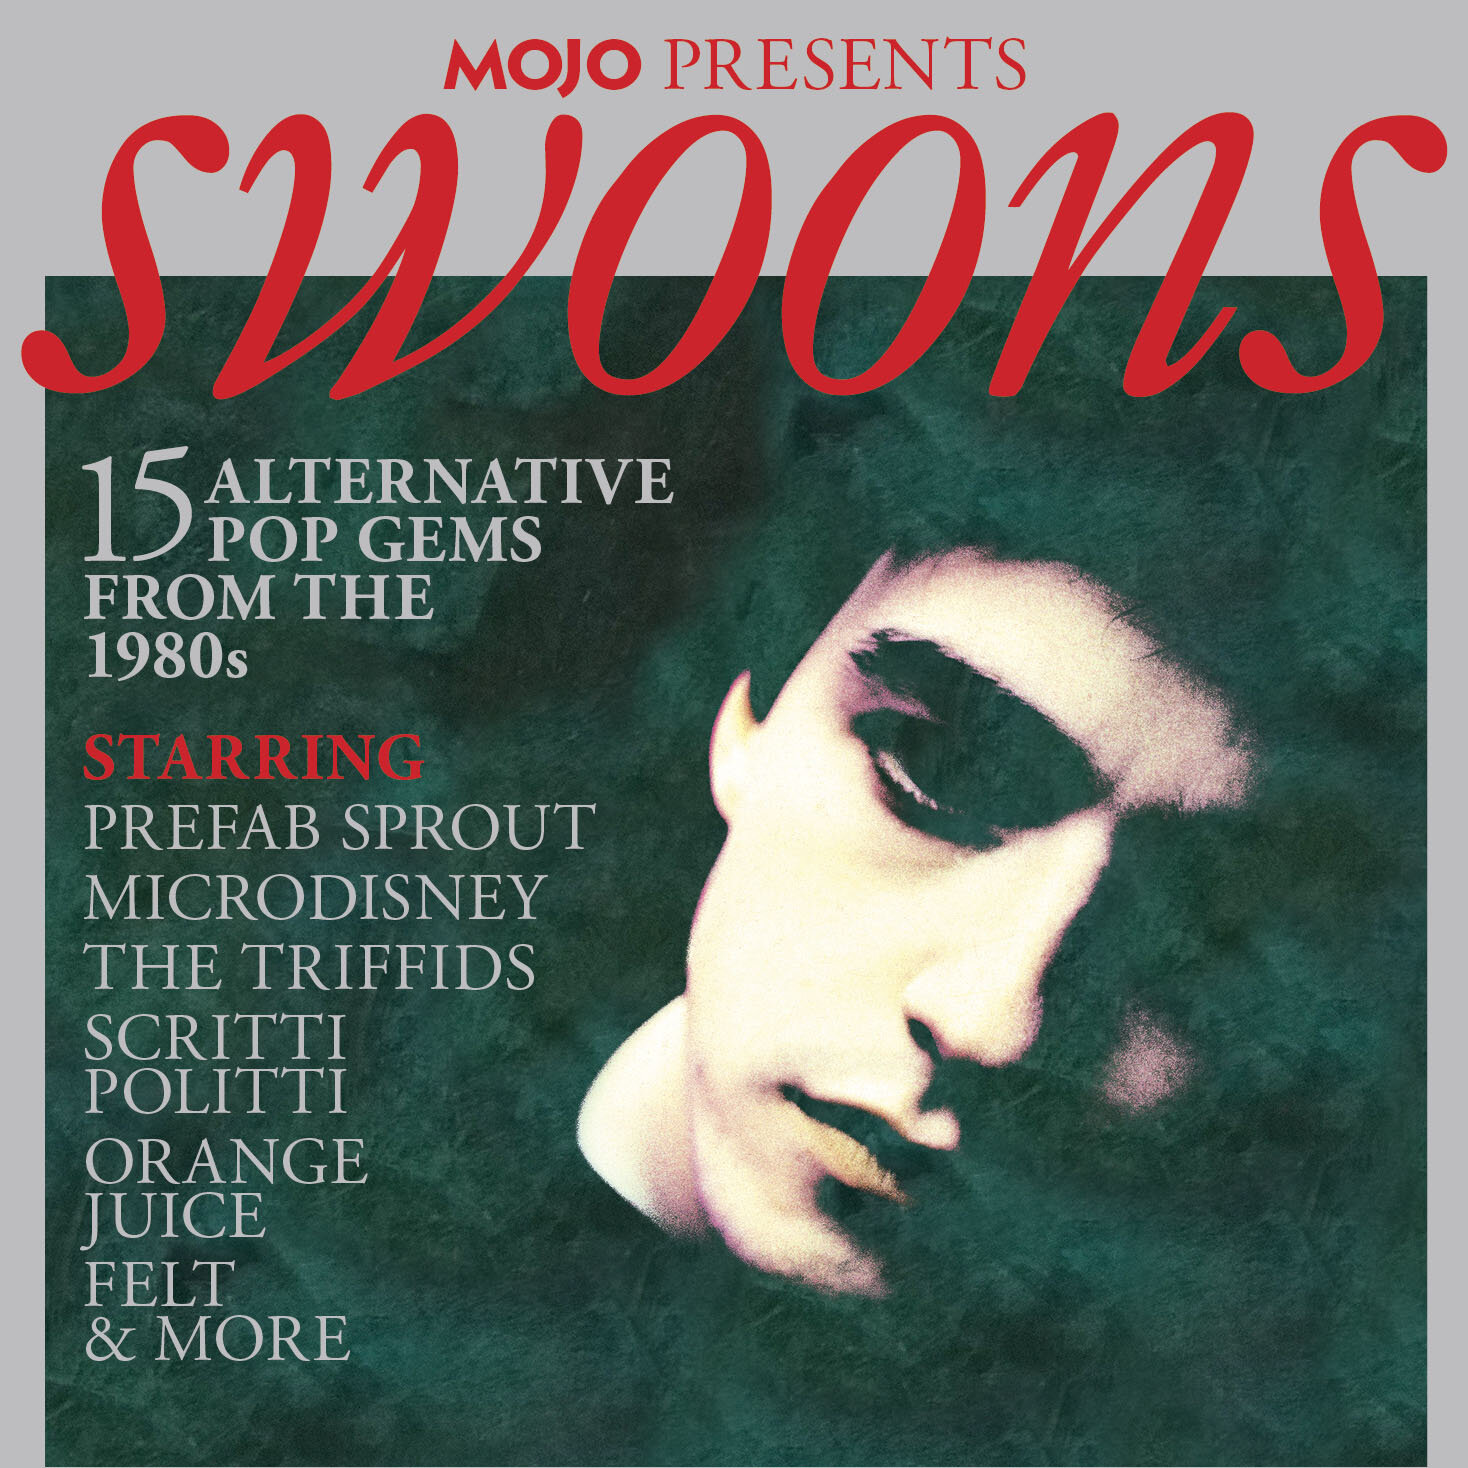 MOJO303_Swoons CD.jpg